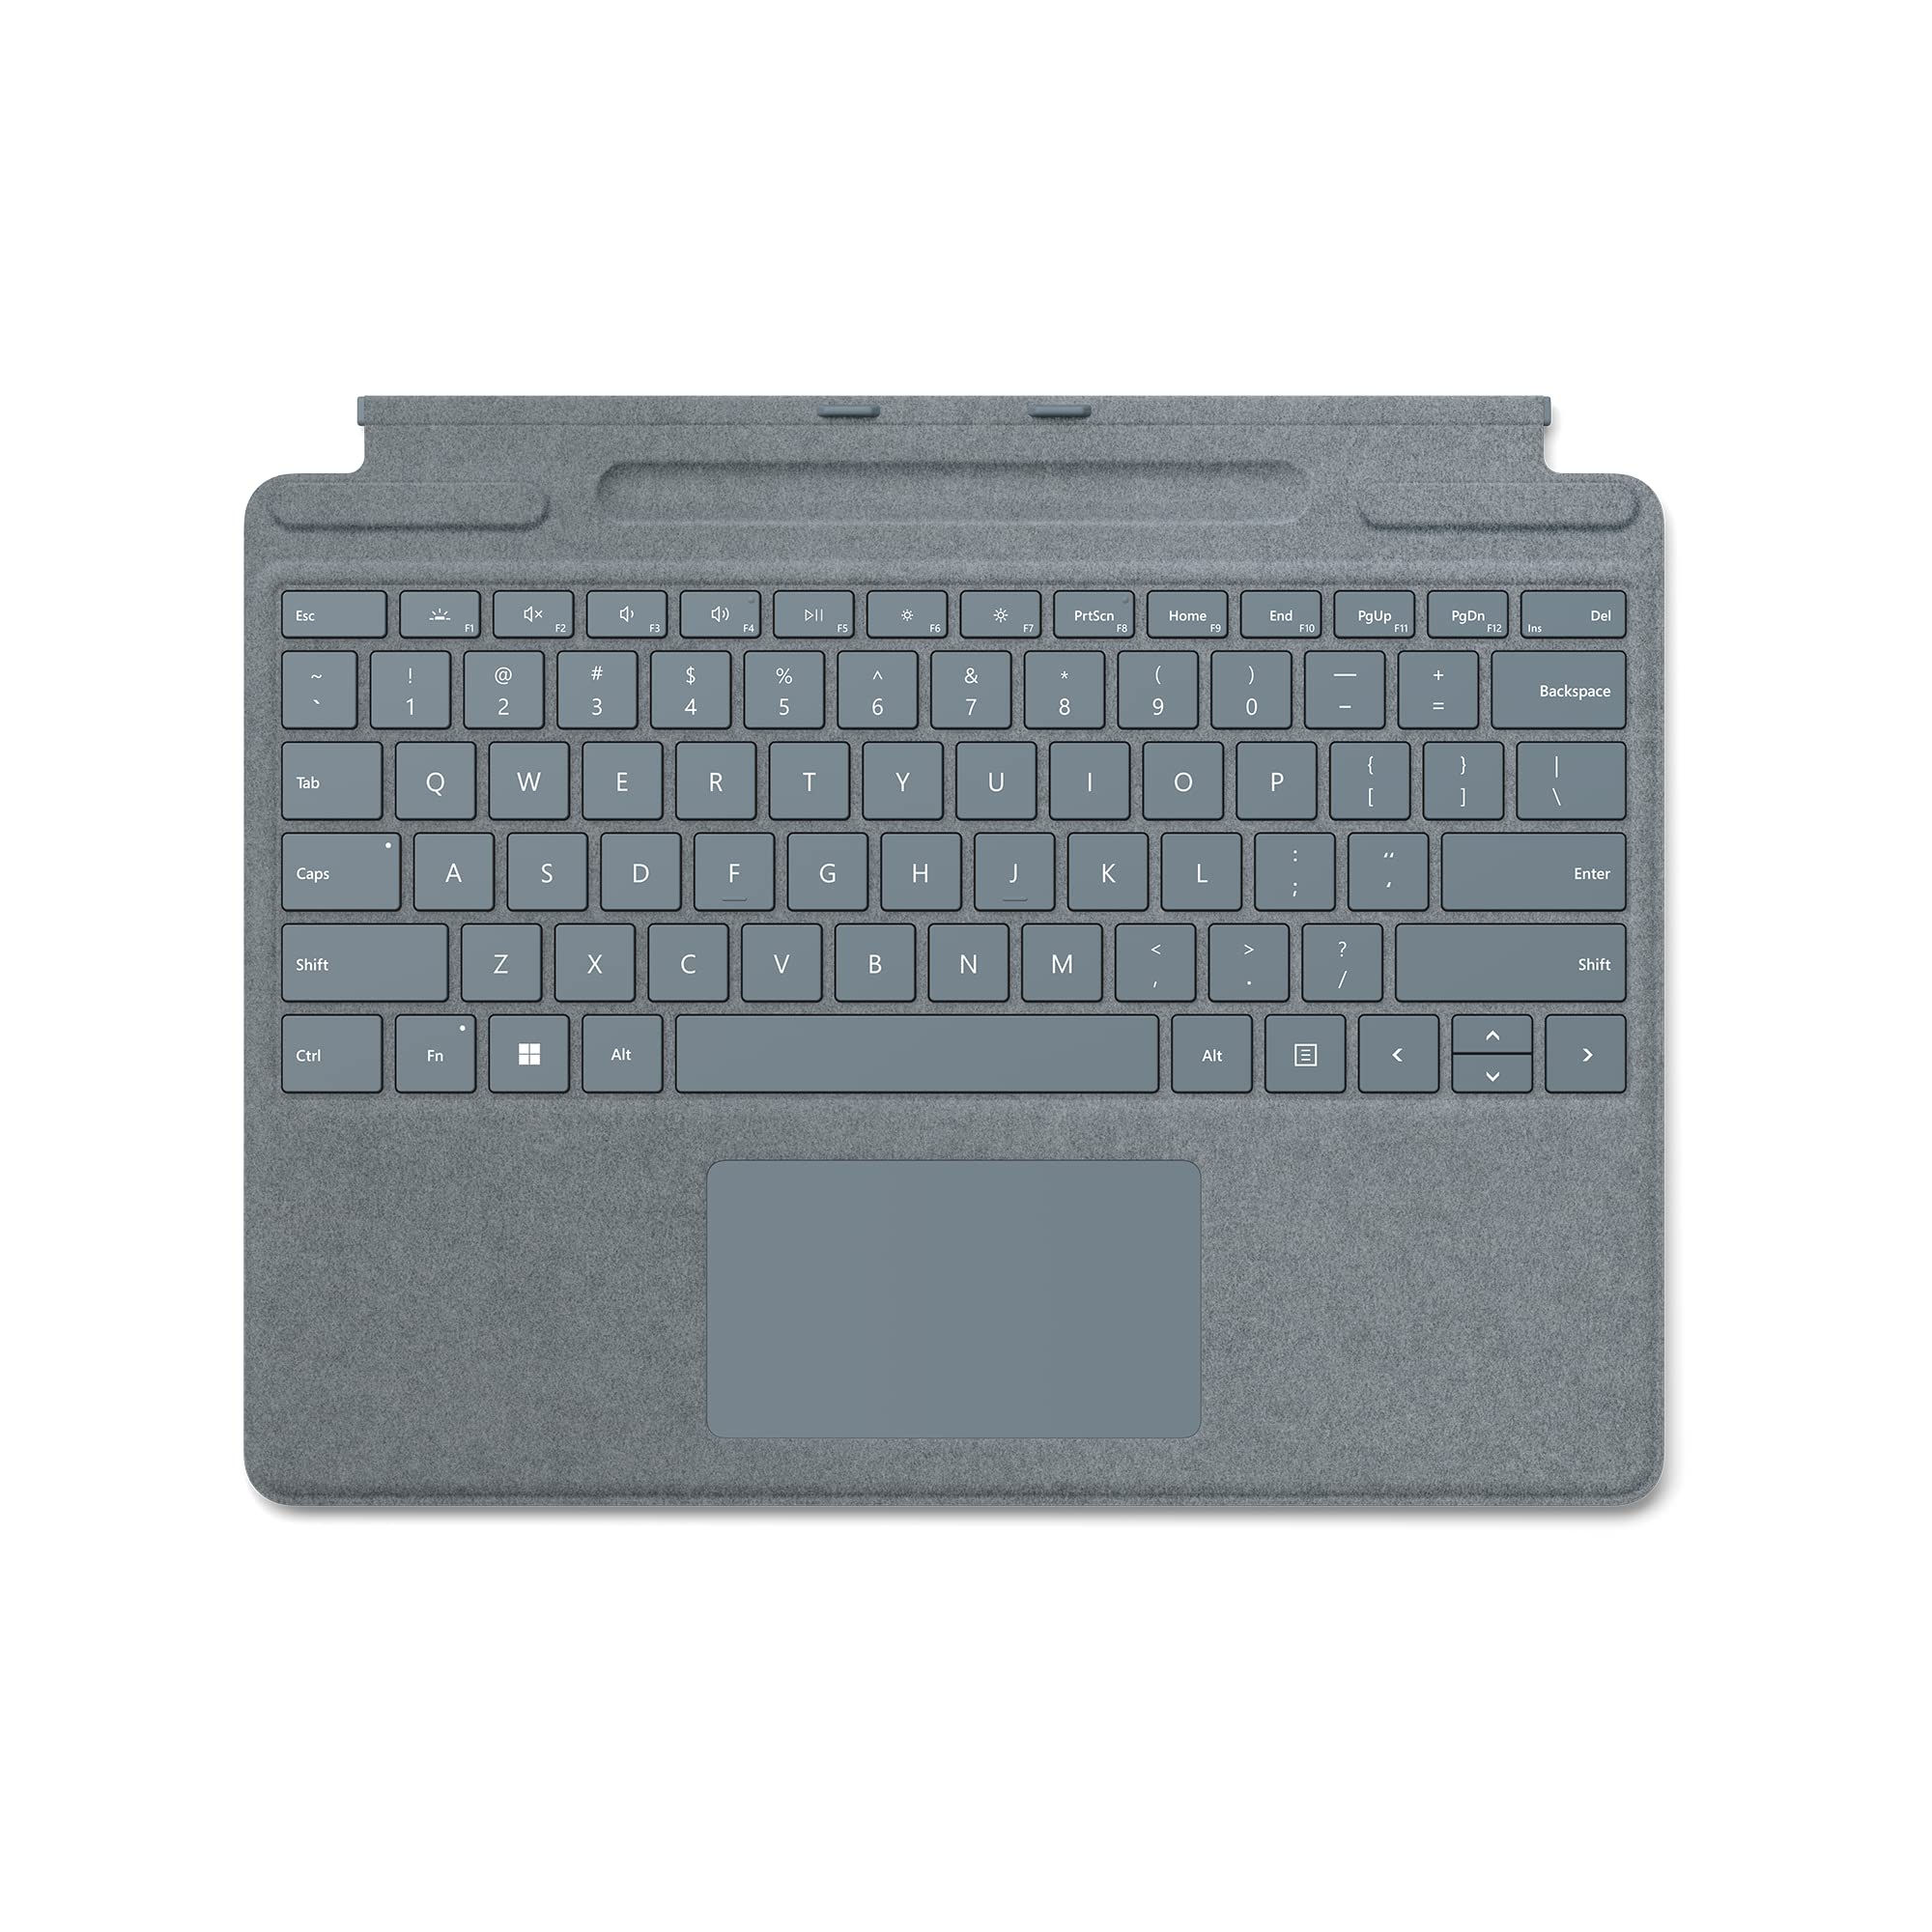 Microsoft Surface Pro Signature Keyboard - Ice Blue (Open Box, Like New)